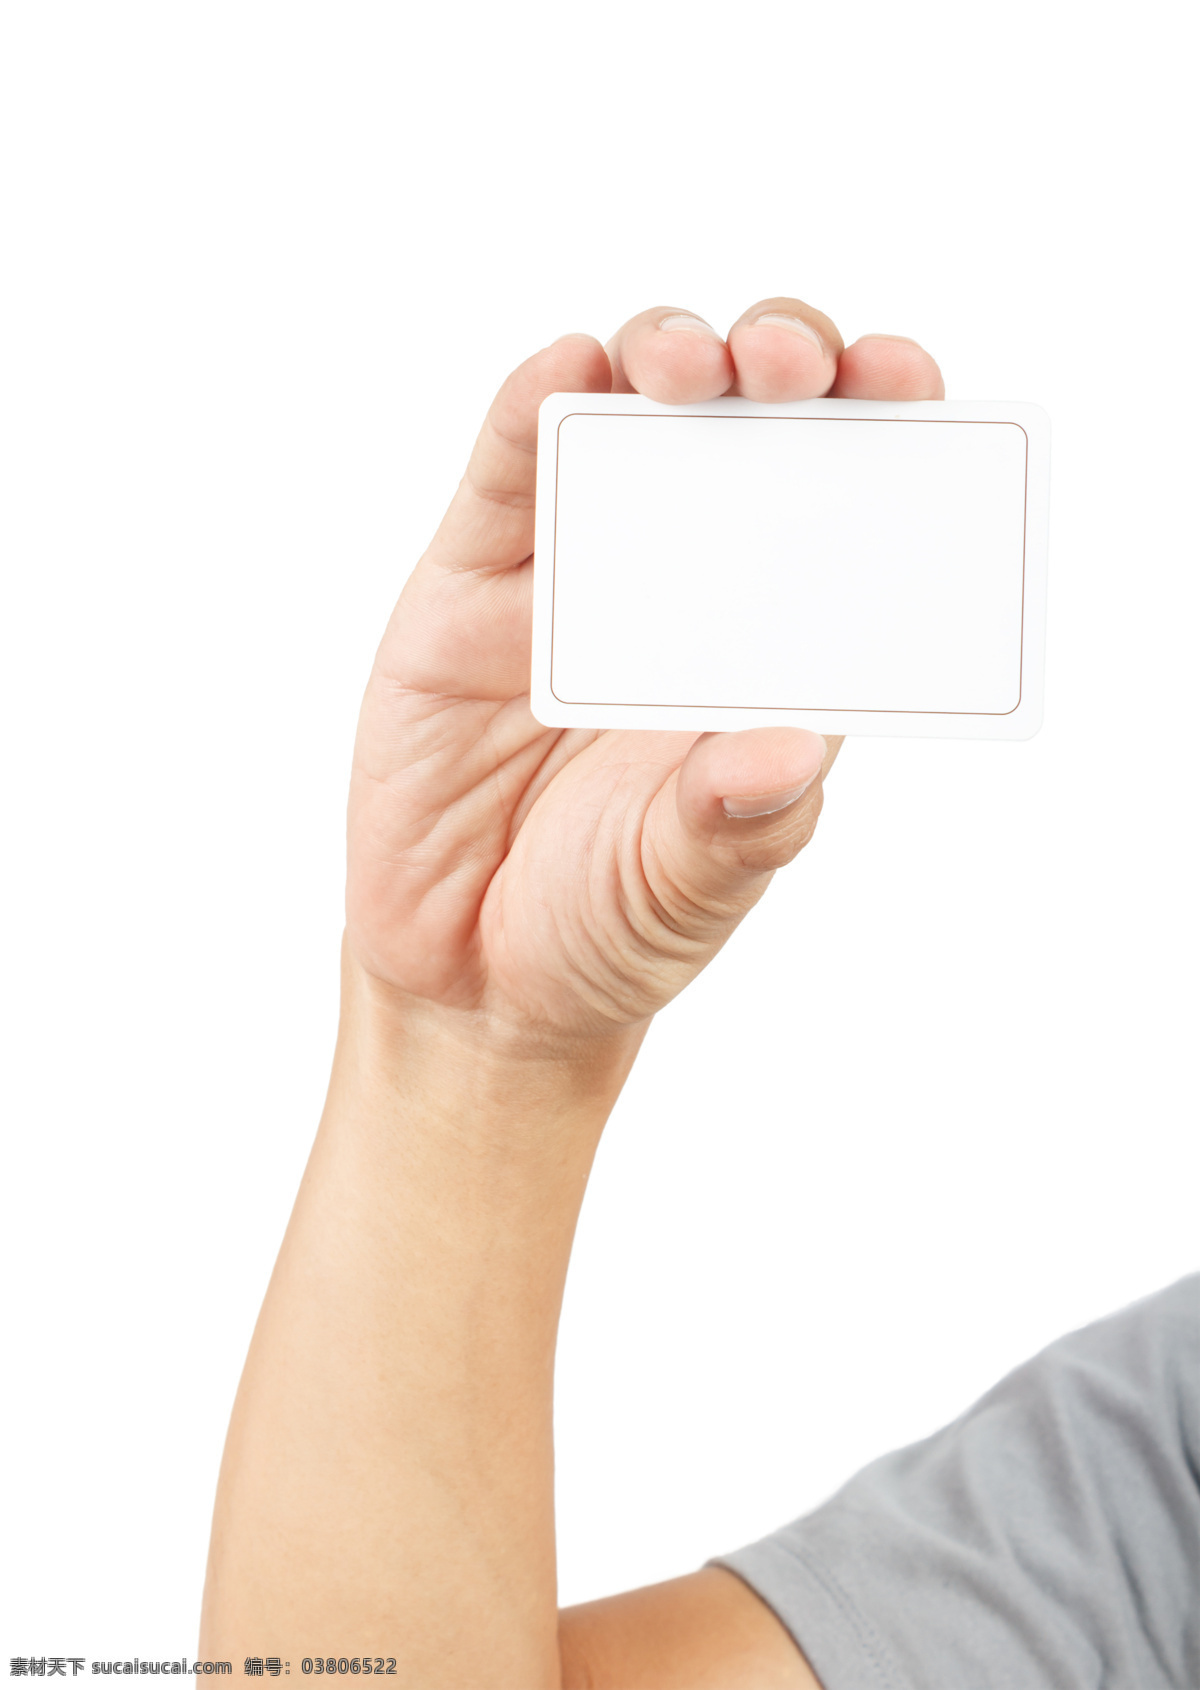 名片 展示 人物 高清 手 空白 拿着名片的手 卡片手势展示 背景空白名片 其它人物 人物图片 白色